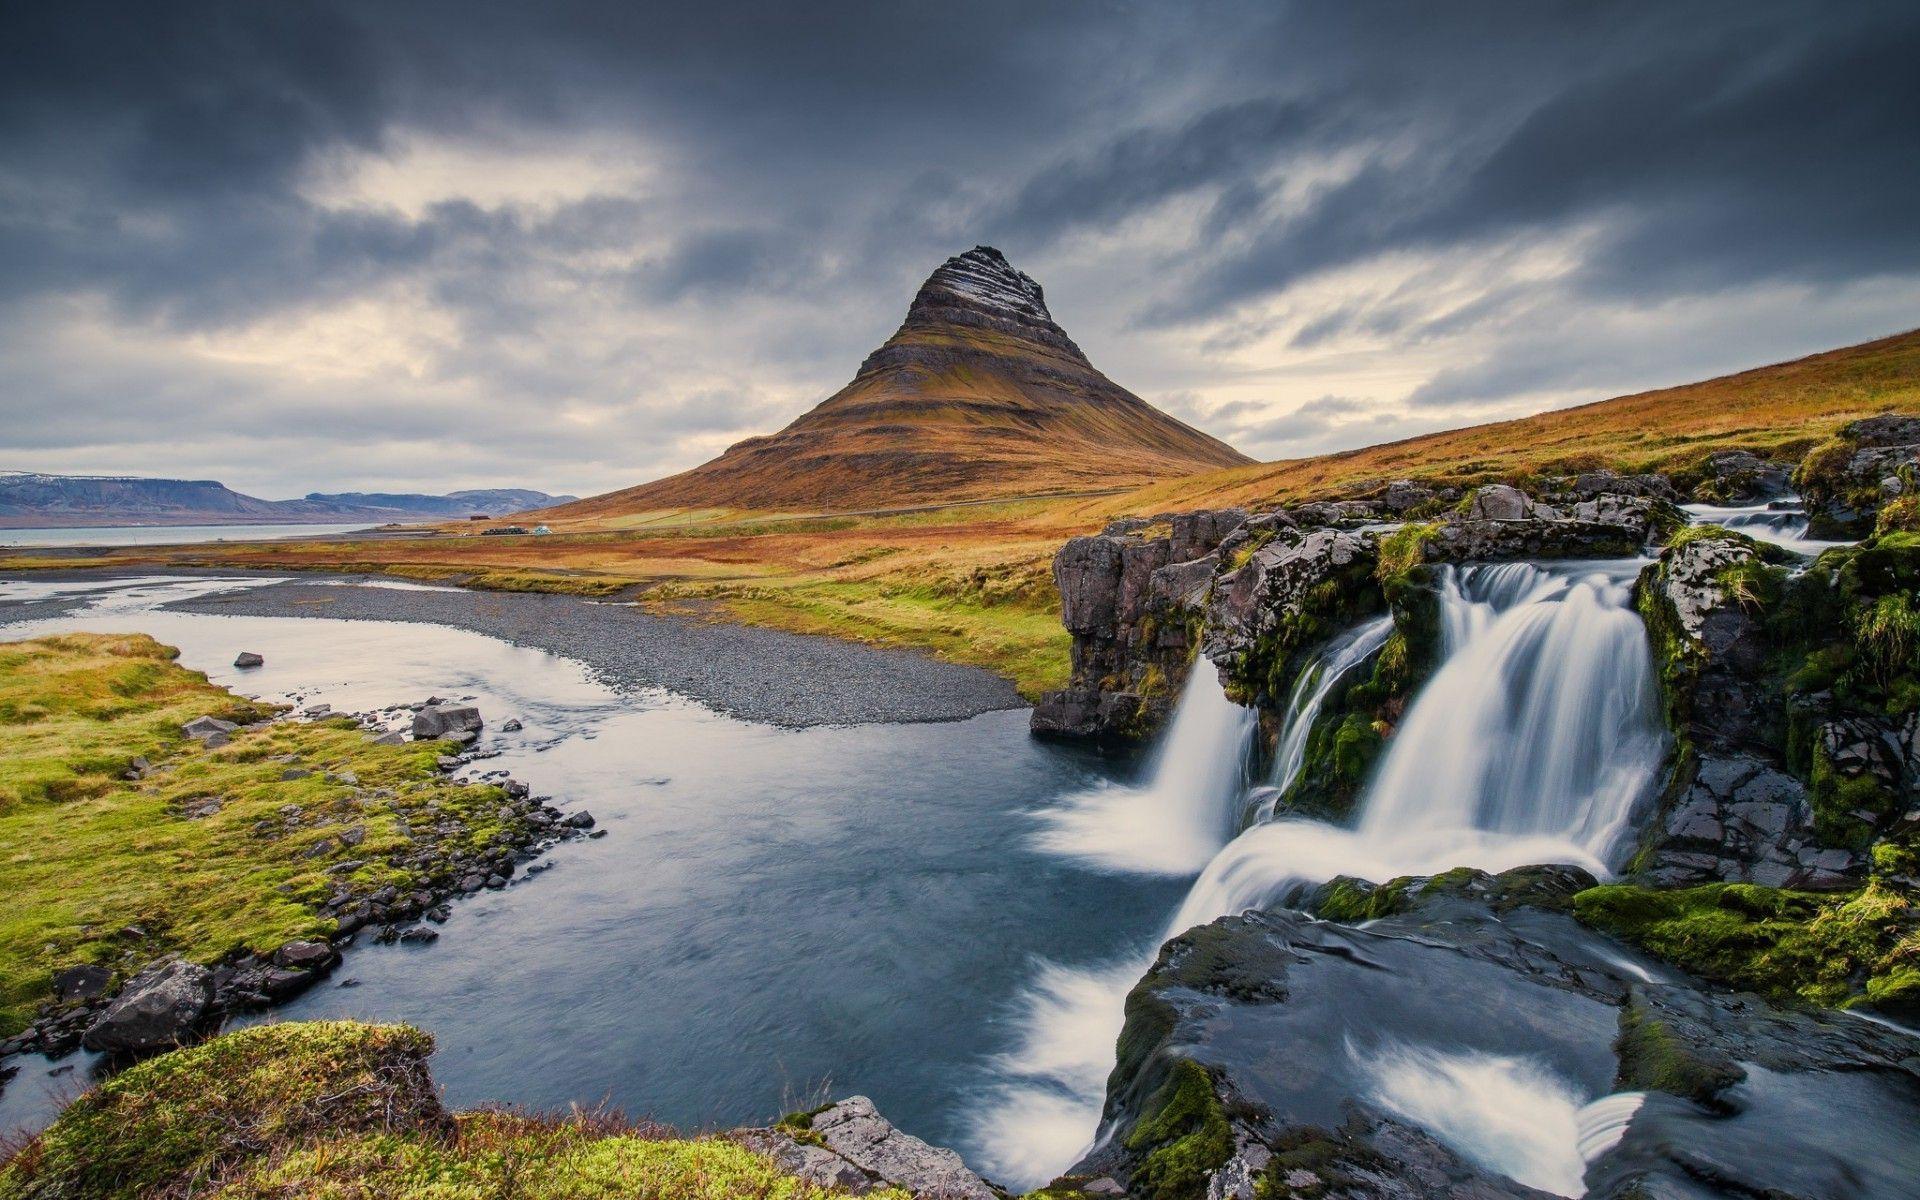 Iceland Desktop Wallpapers sẽ giúp bạn trang trí màn hình của mình với những cảnh đẹp tuyệt mỹ về đất nước Bắc Âu. Từ đường phố cổ điển đến bờ biển xanh ngọc của Iceland, hình ảnh đẹp này sẽ làm cho bạn cảm thấy như đang đứng giữa thiên nhiên trong tốc độ sống vội vàng hàng ngày.